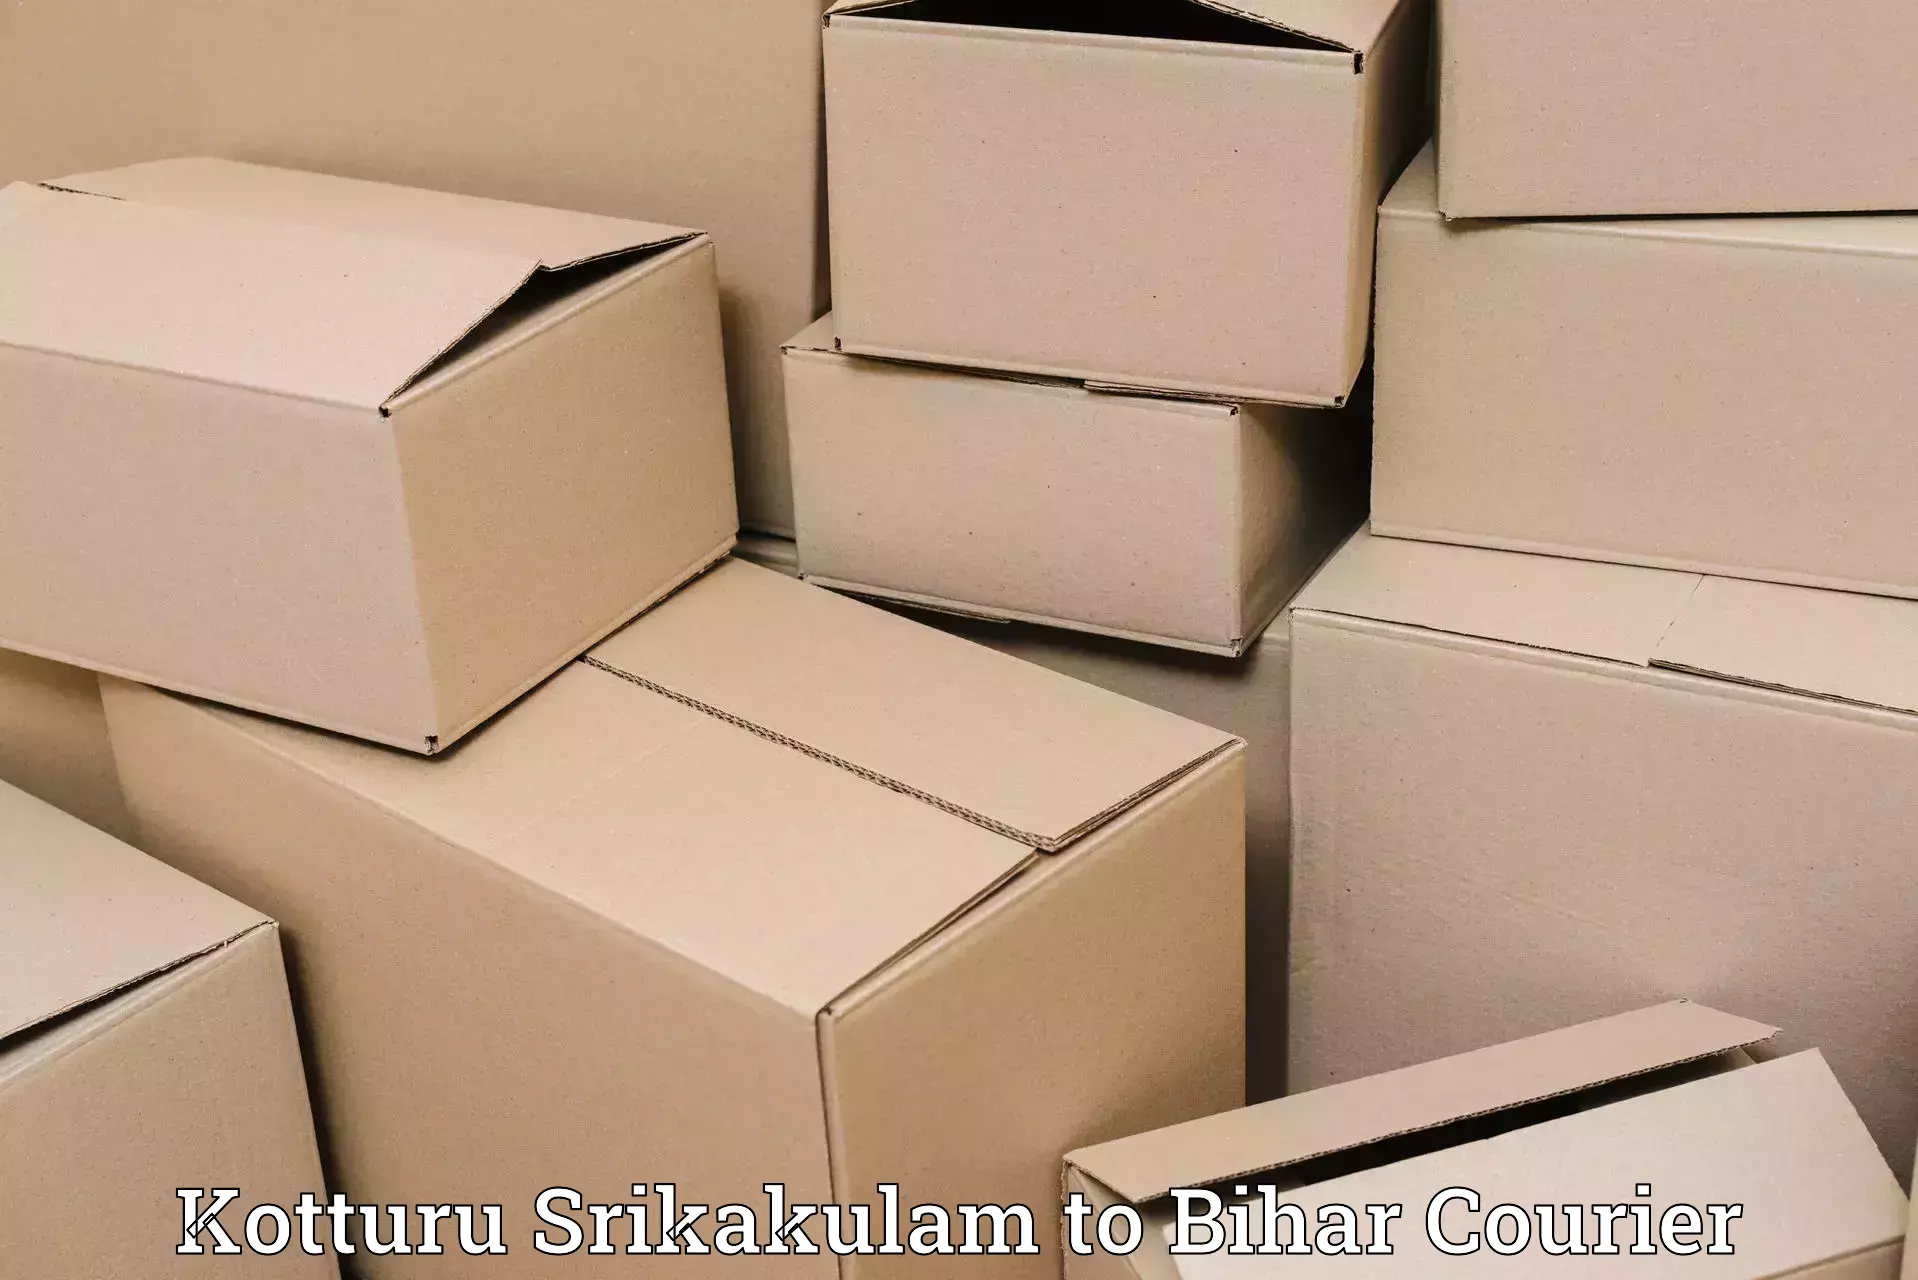 Affordable parcel service Kotturu Srikakulam to Danapur